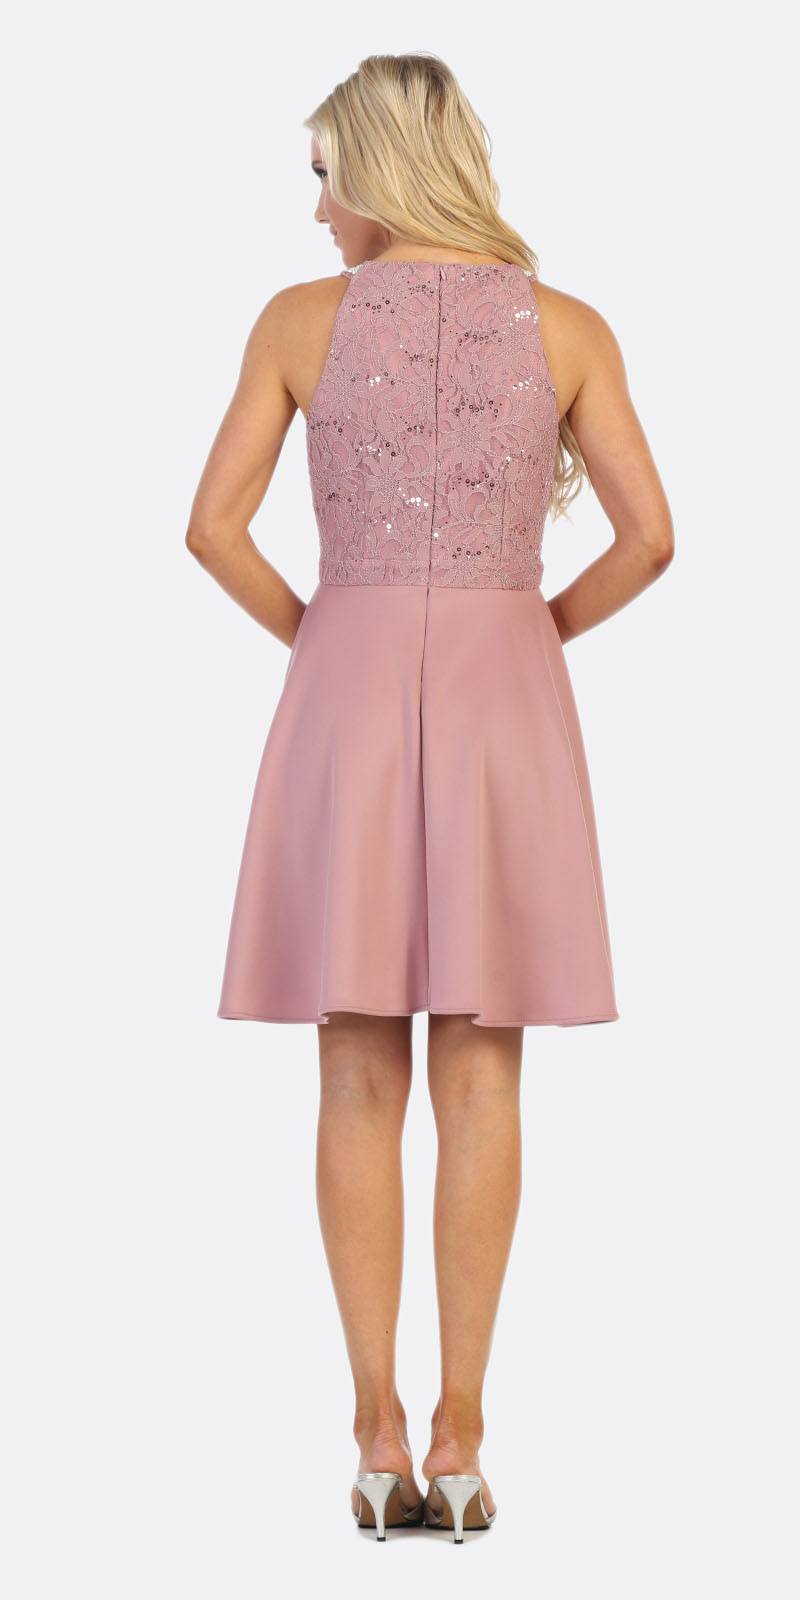 Celavie 6382 Mauve Lace Top Knee-Length Cocktail Dress